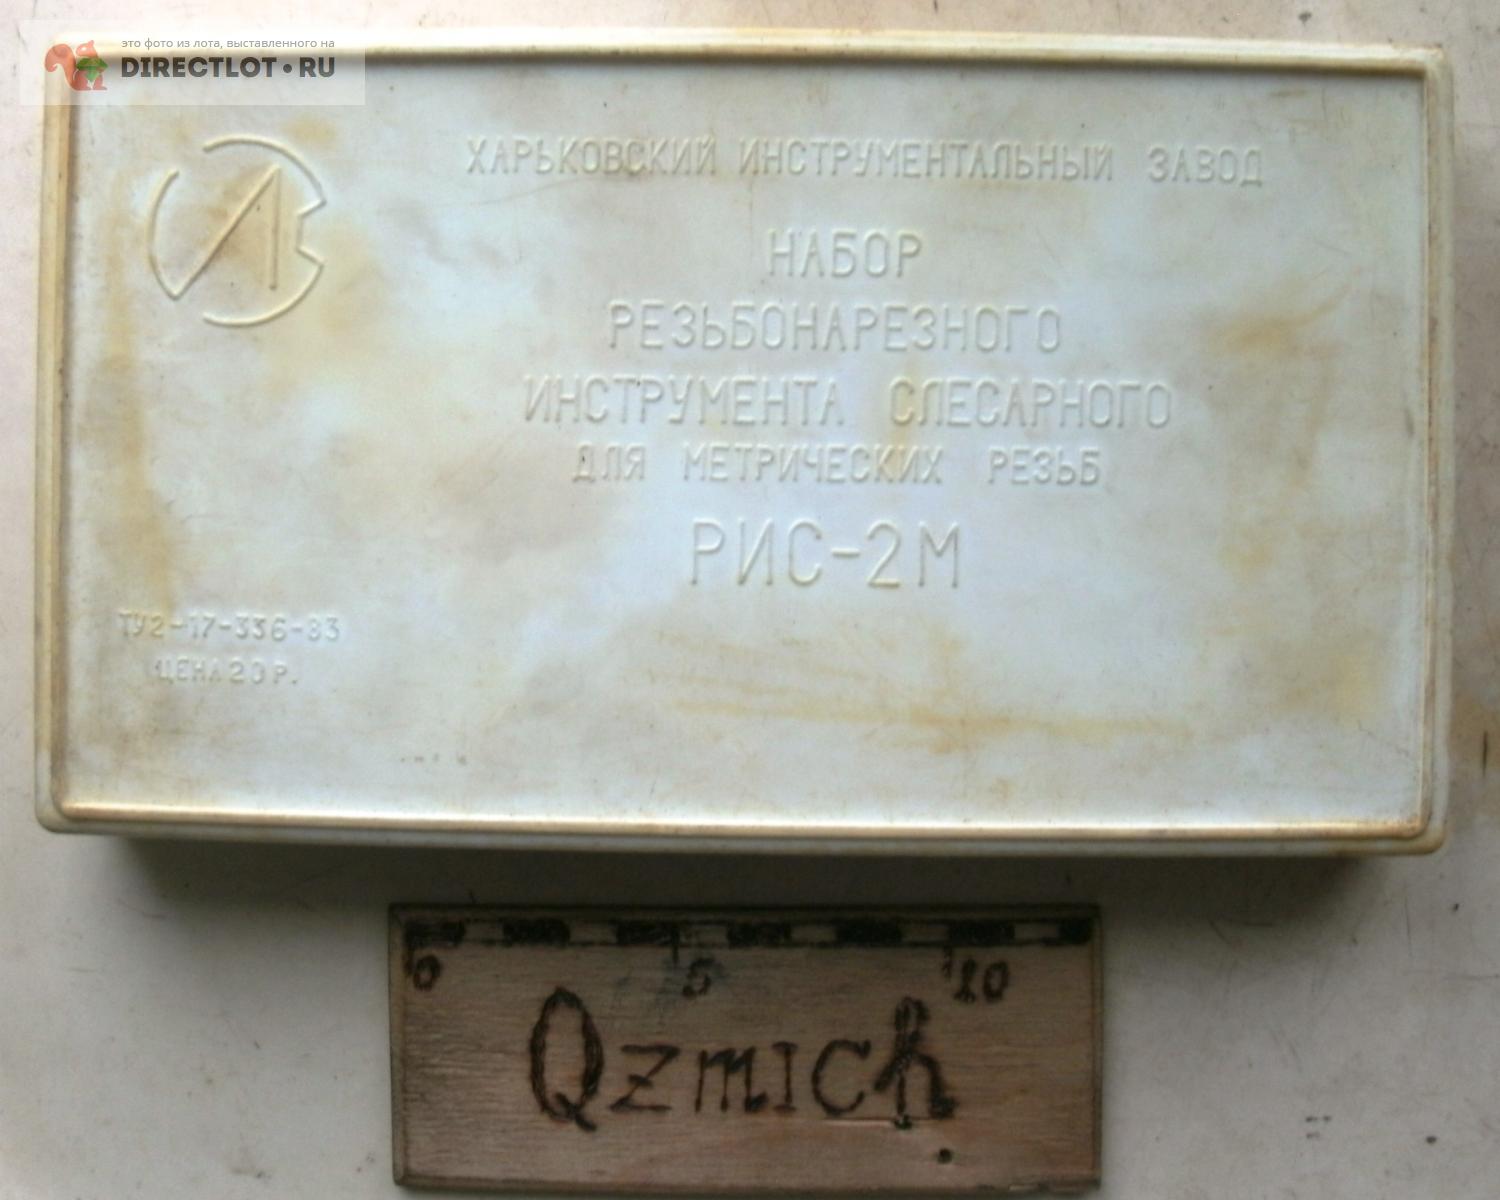  резьбонарезной РИС-2М СССР  в Нижнем Новгороде цена 2000 Р .